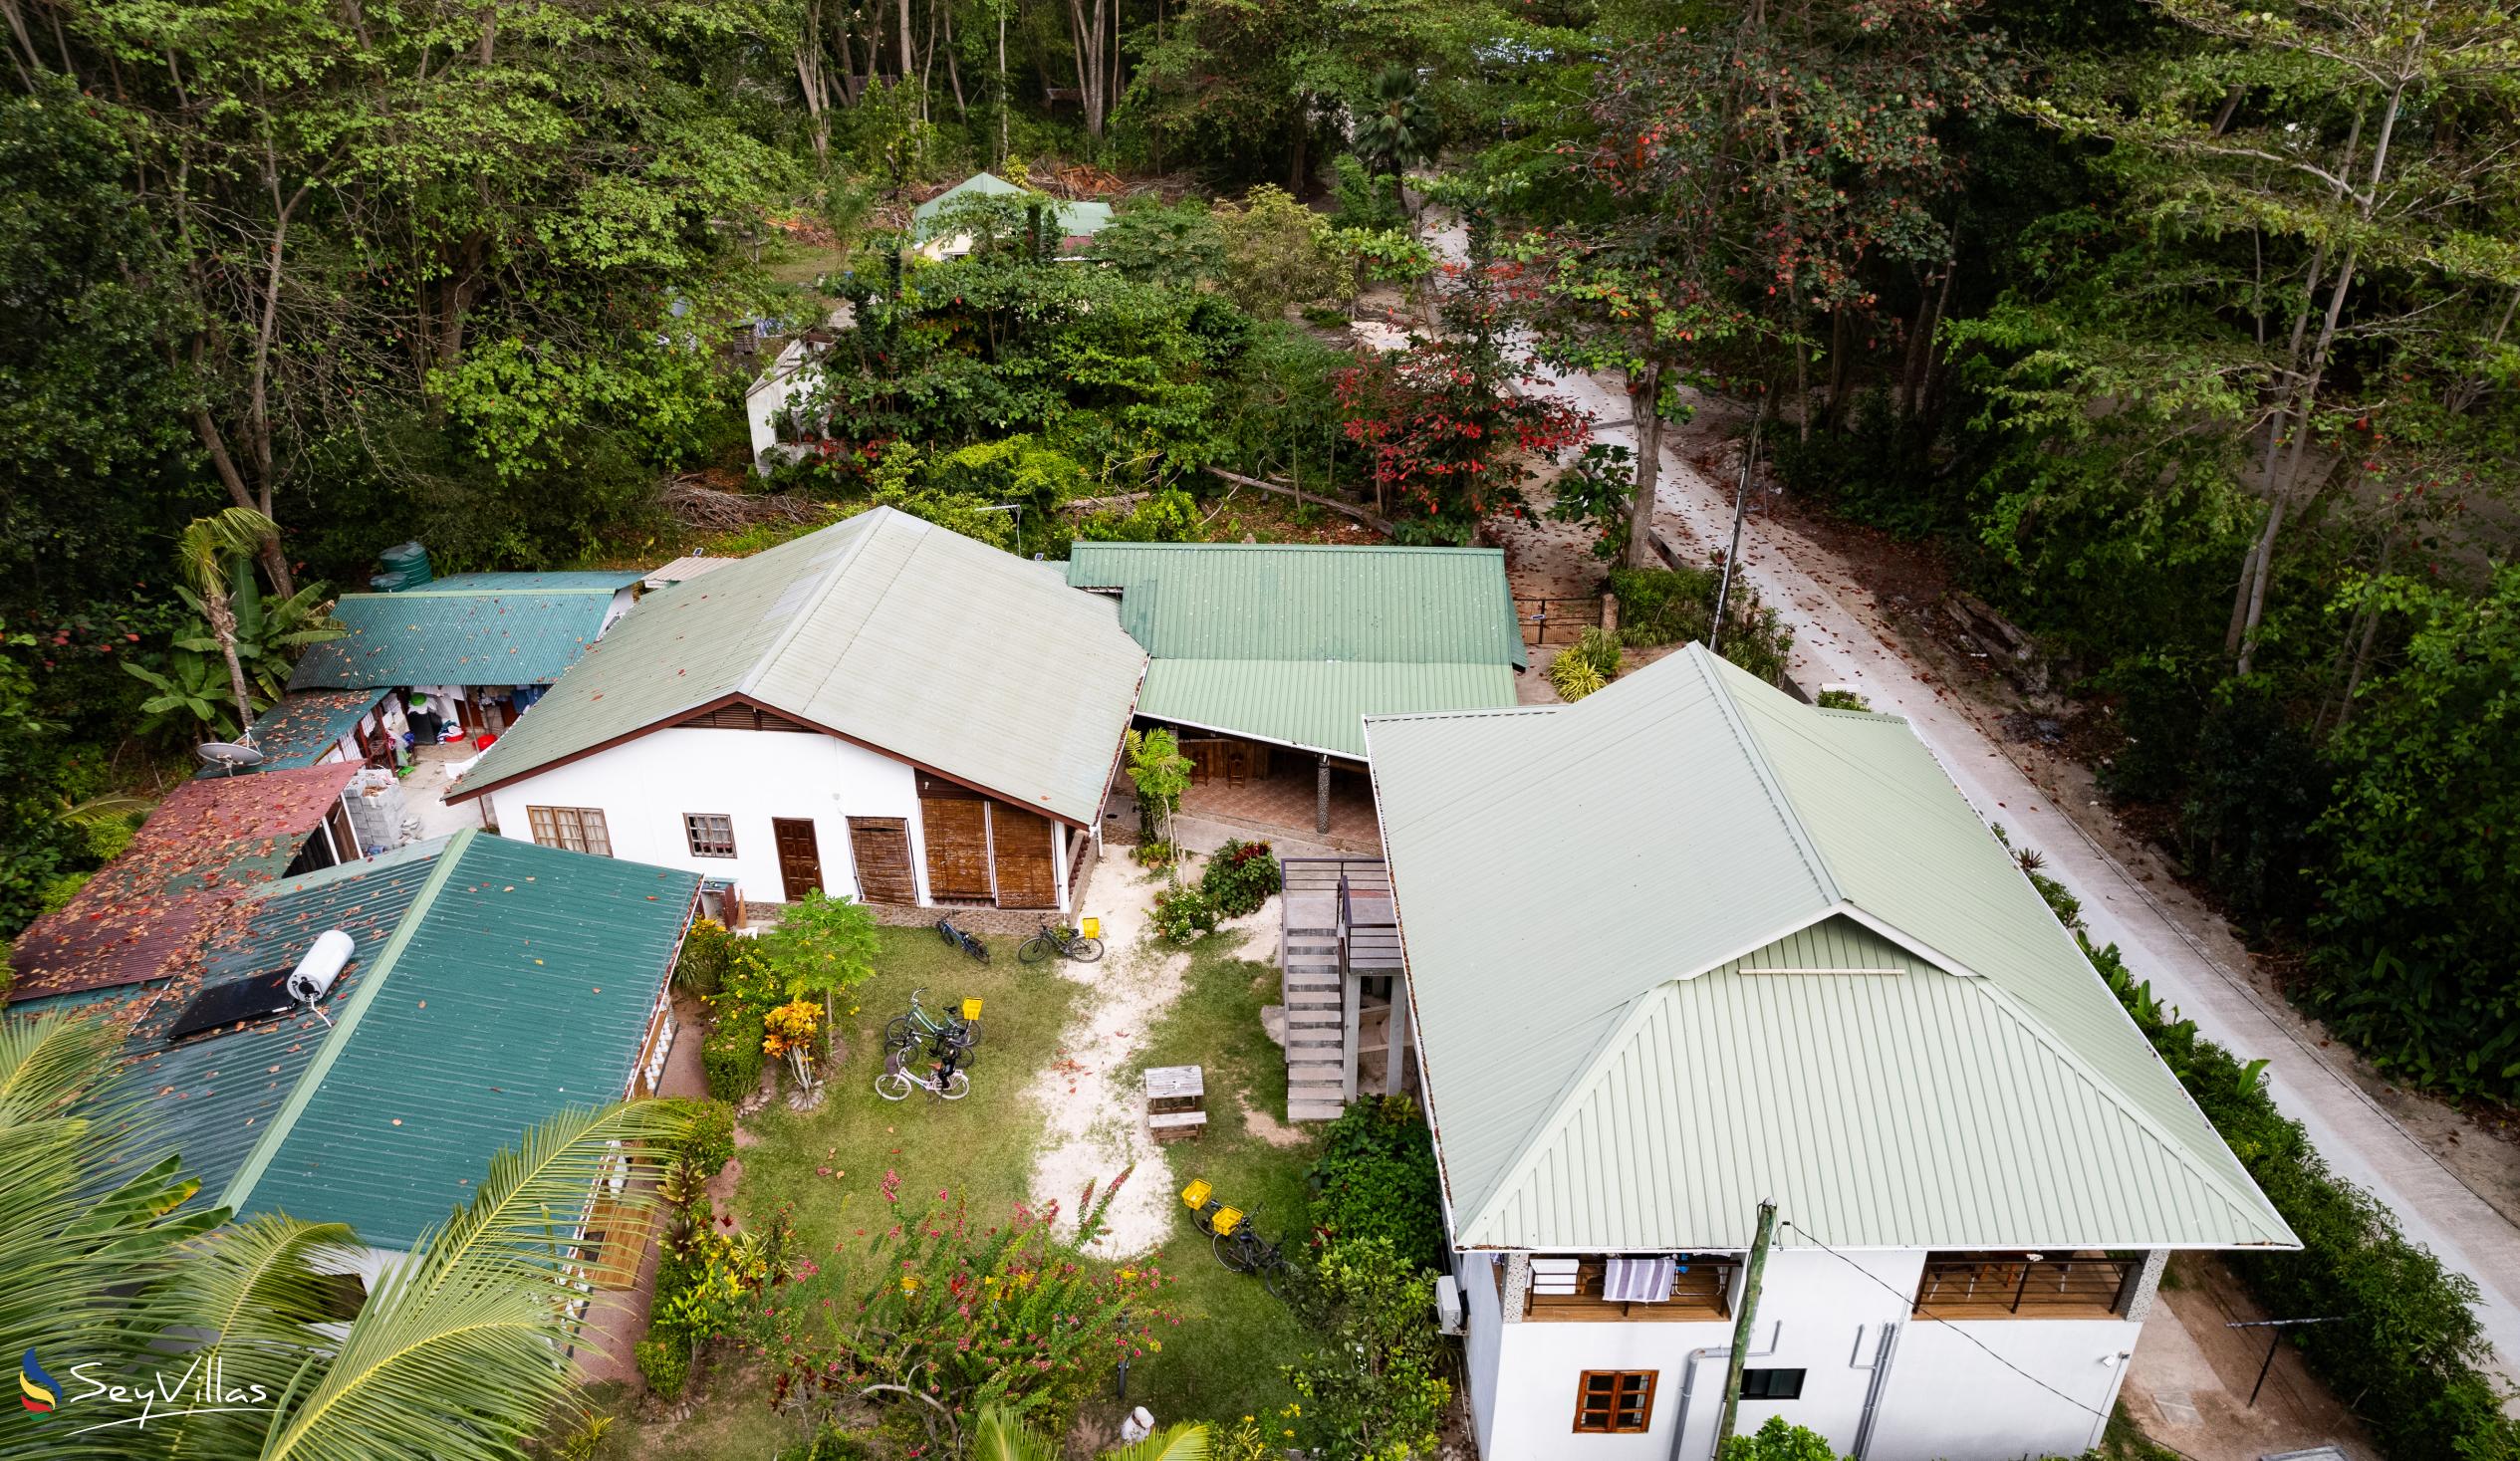 Foto 4: Tannette's Villa - Aussenbereich - La Digue (Seychellen)